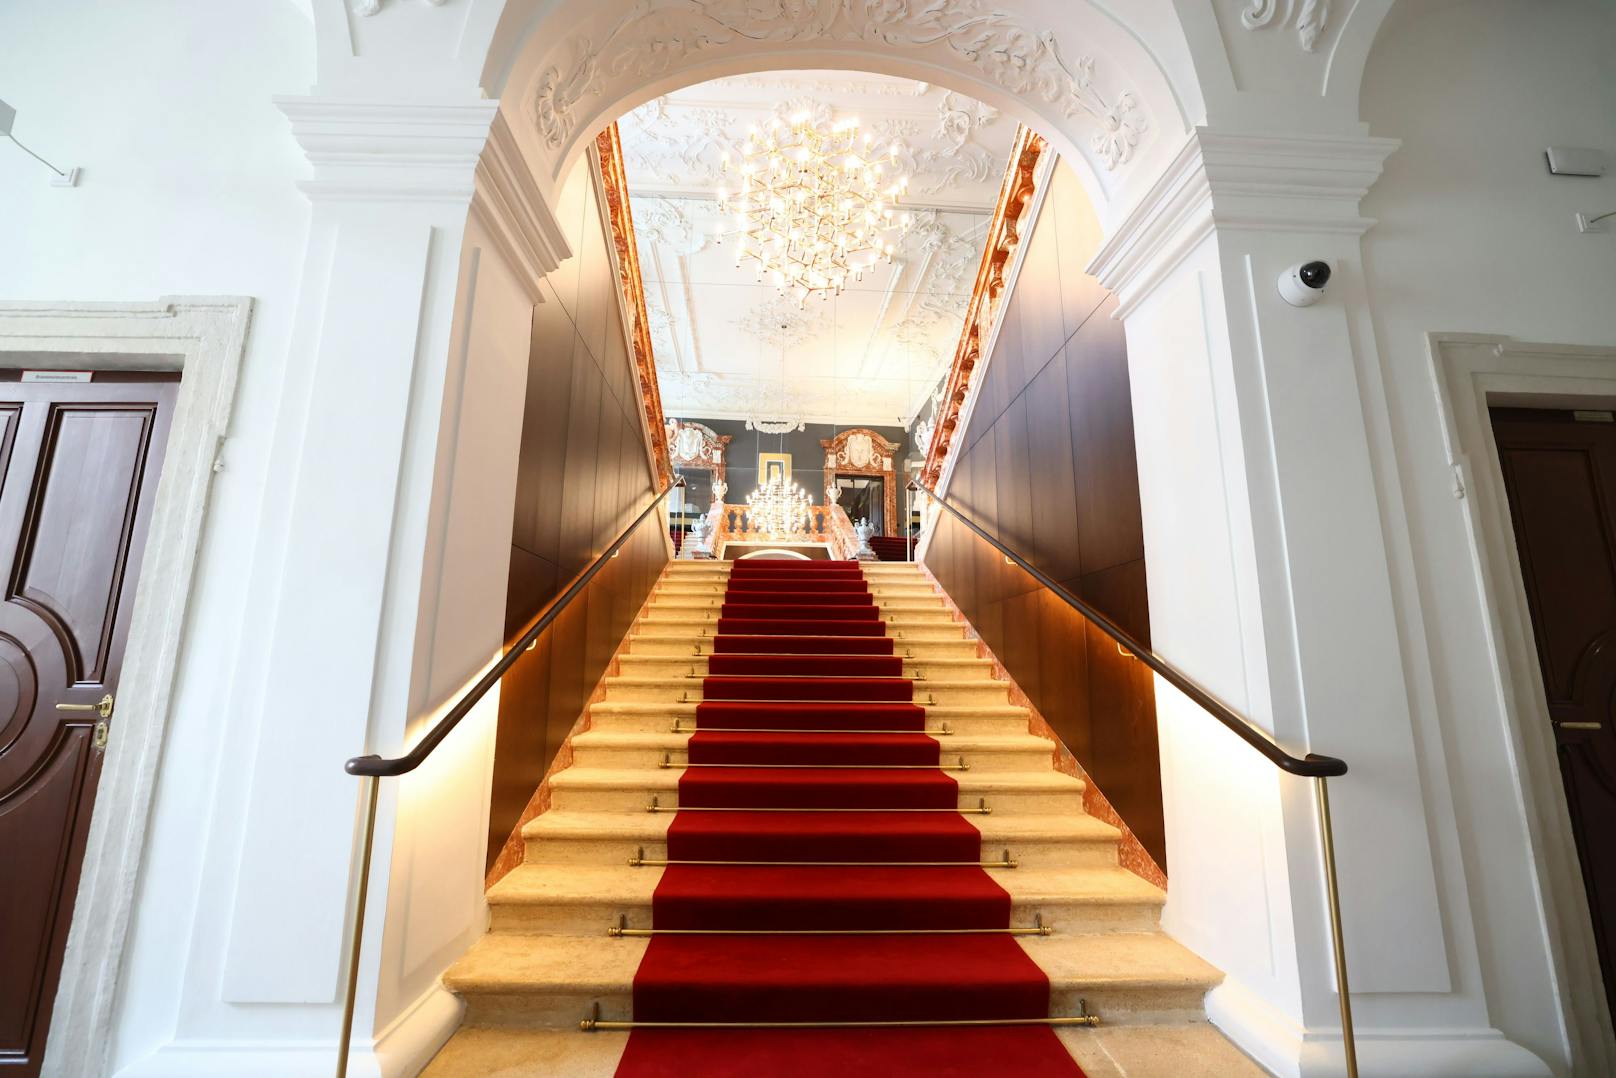 Über diesen prunkvollen Aufgang geht es in die Bel Etage des Palais Harrach.